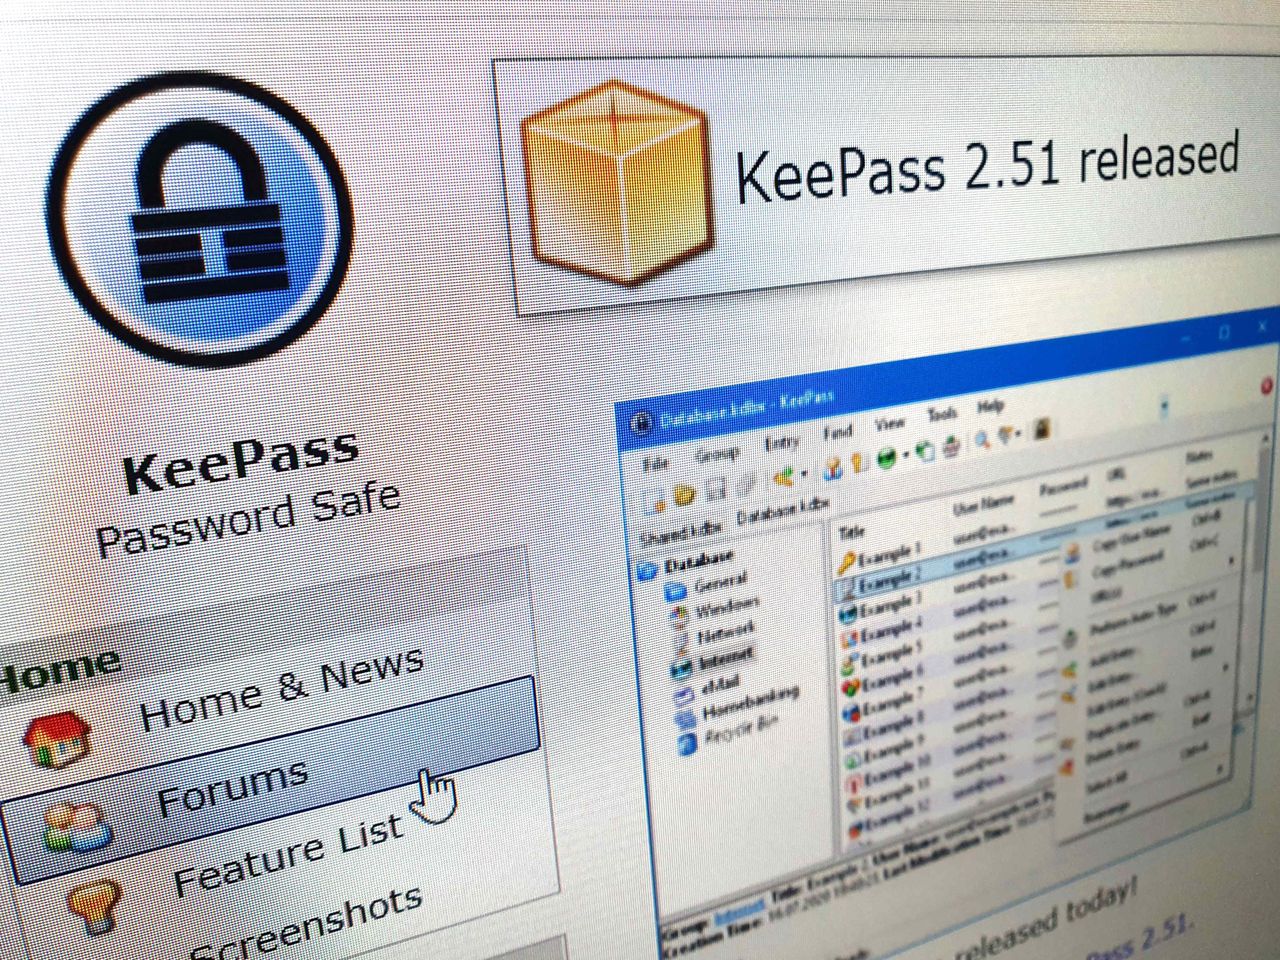 KeePass 2.51 do pobrania. Są poprawki w interfejsie